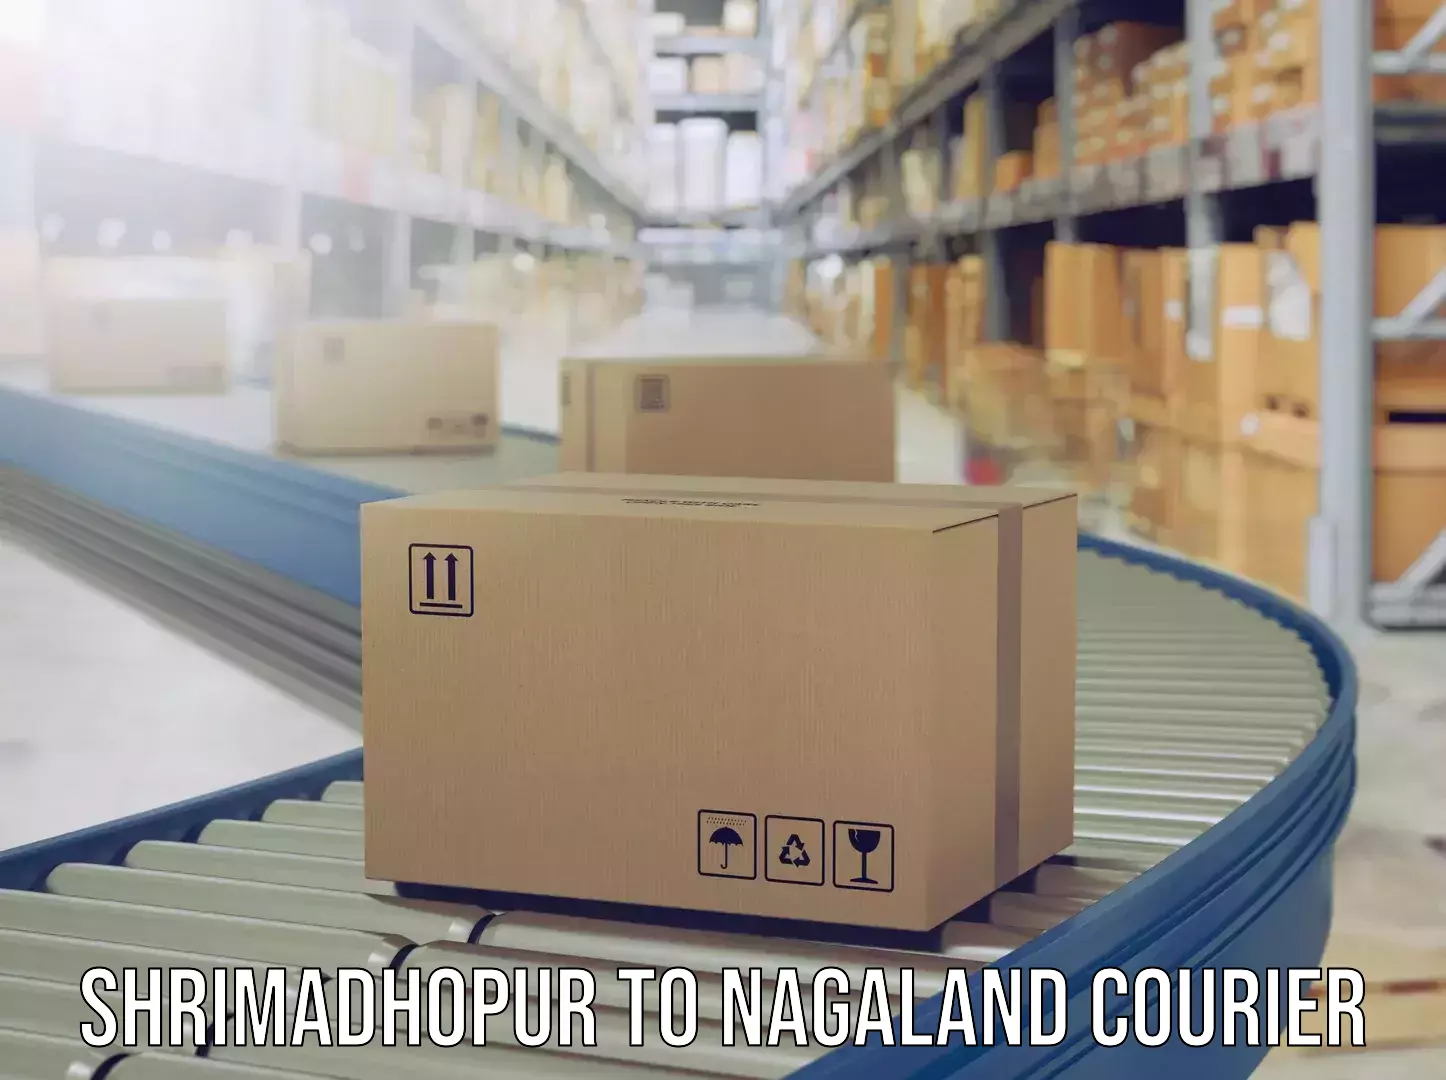 Luggage transport company Shrimadhopur to Nagaland